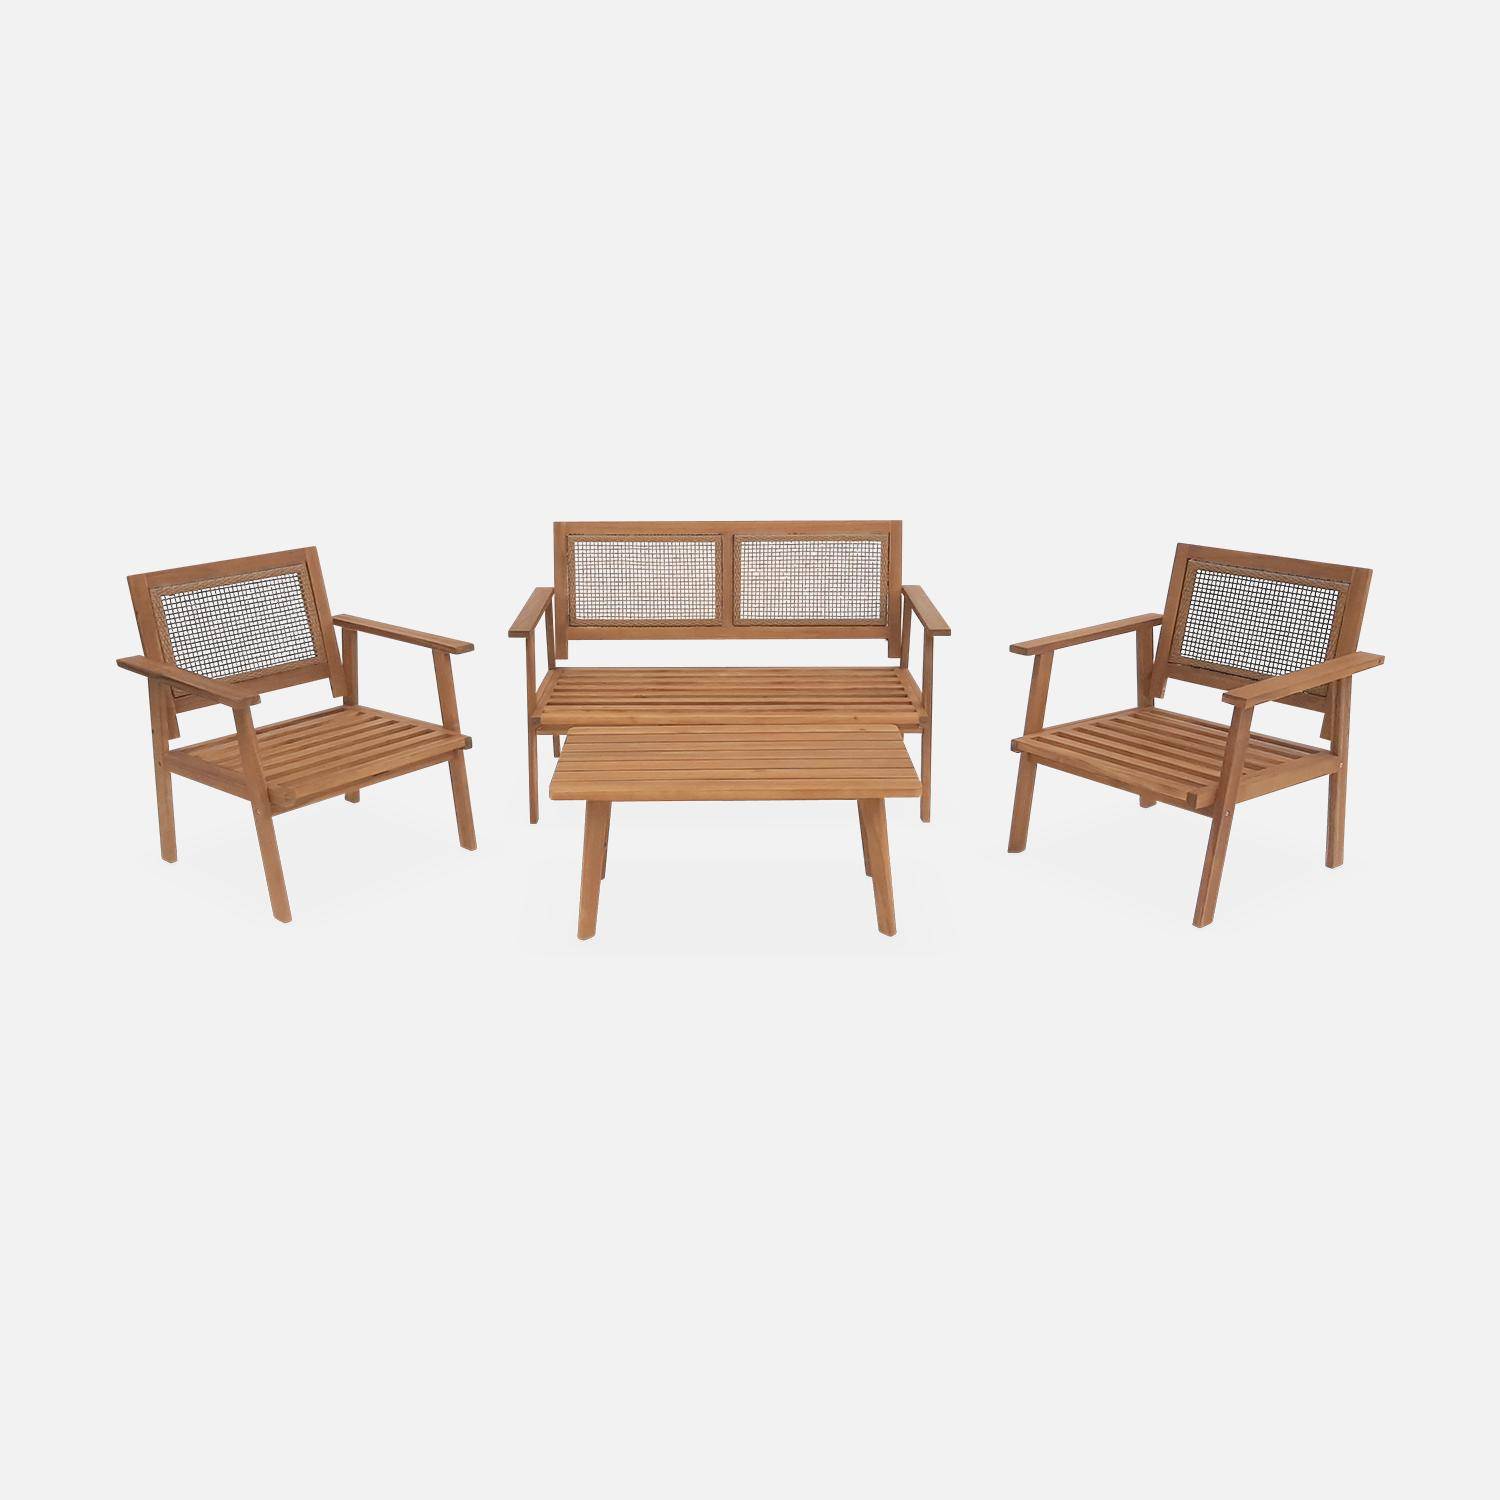 Conjunto de muebles de jardín, Bohémia, caña cuadrada, sofá 2 plazas, 2 sillones, 1 mesa de centro 117x64x74 cm Photo8